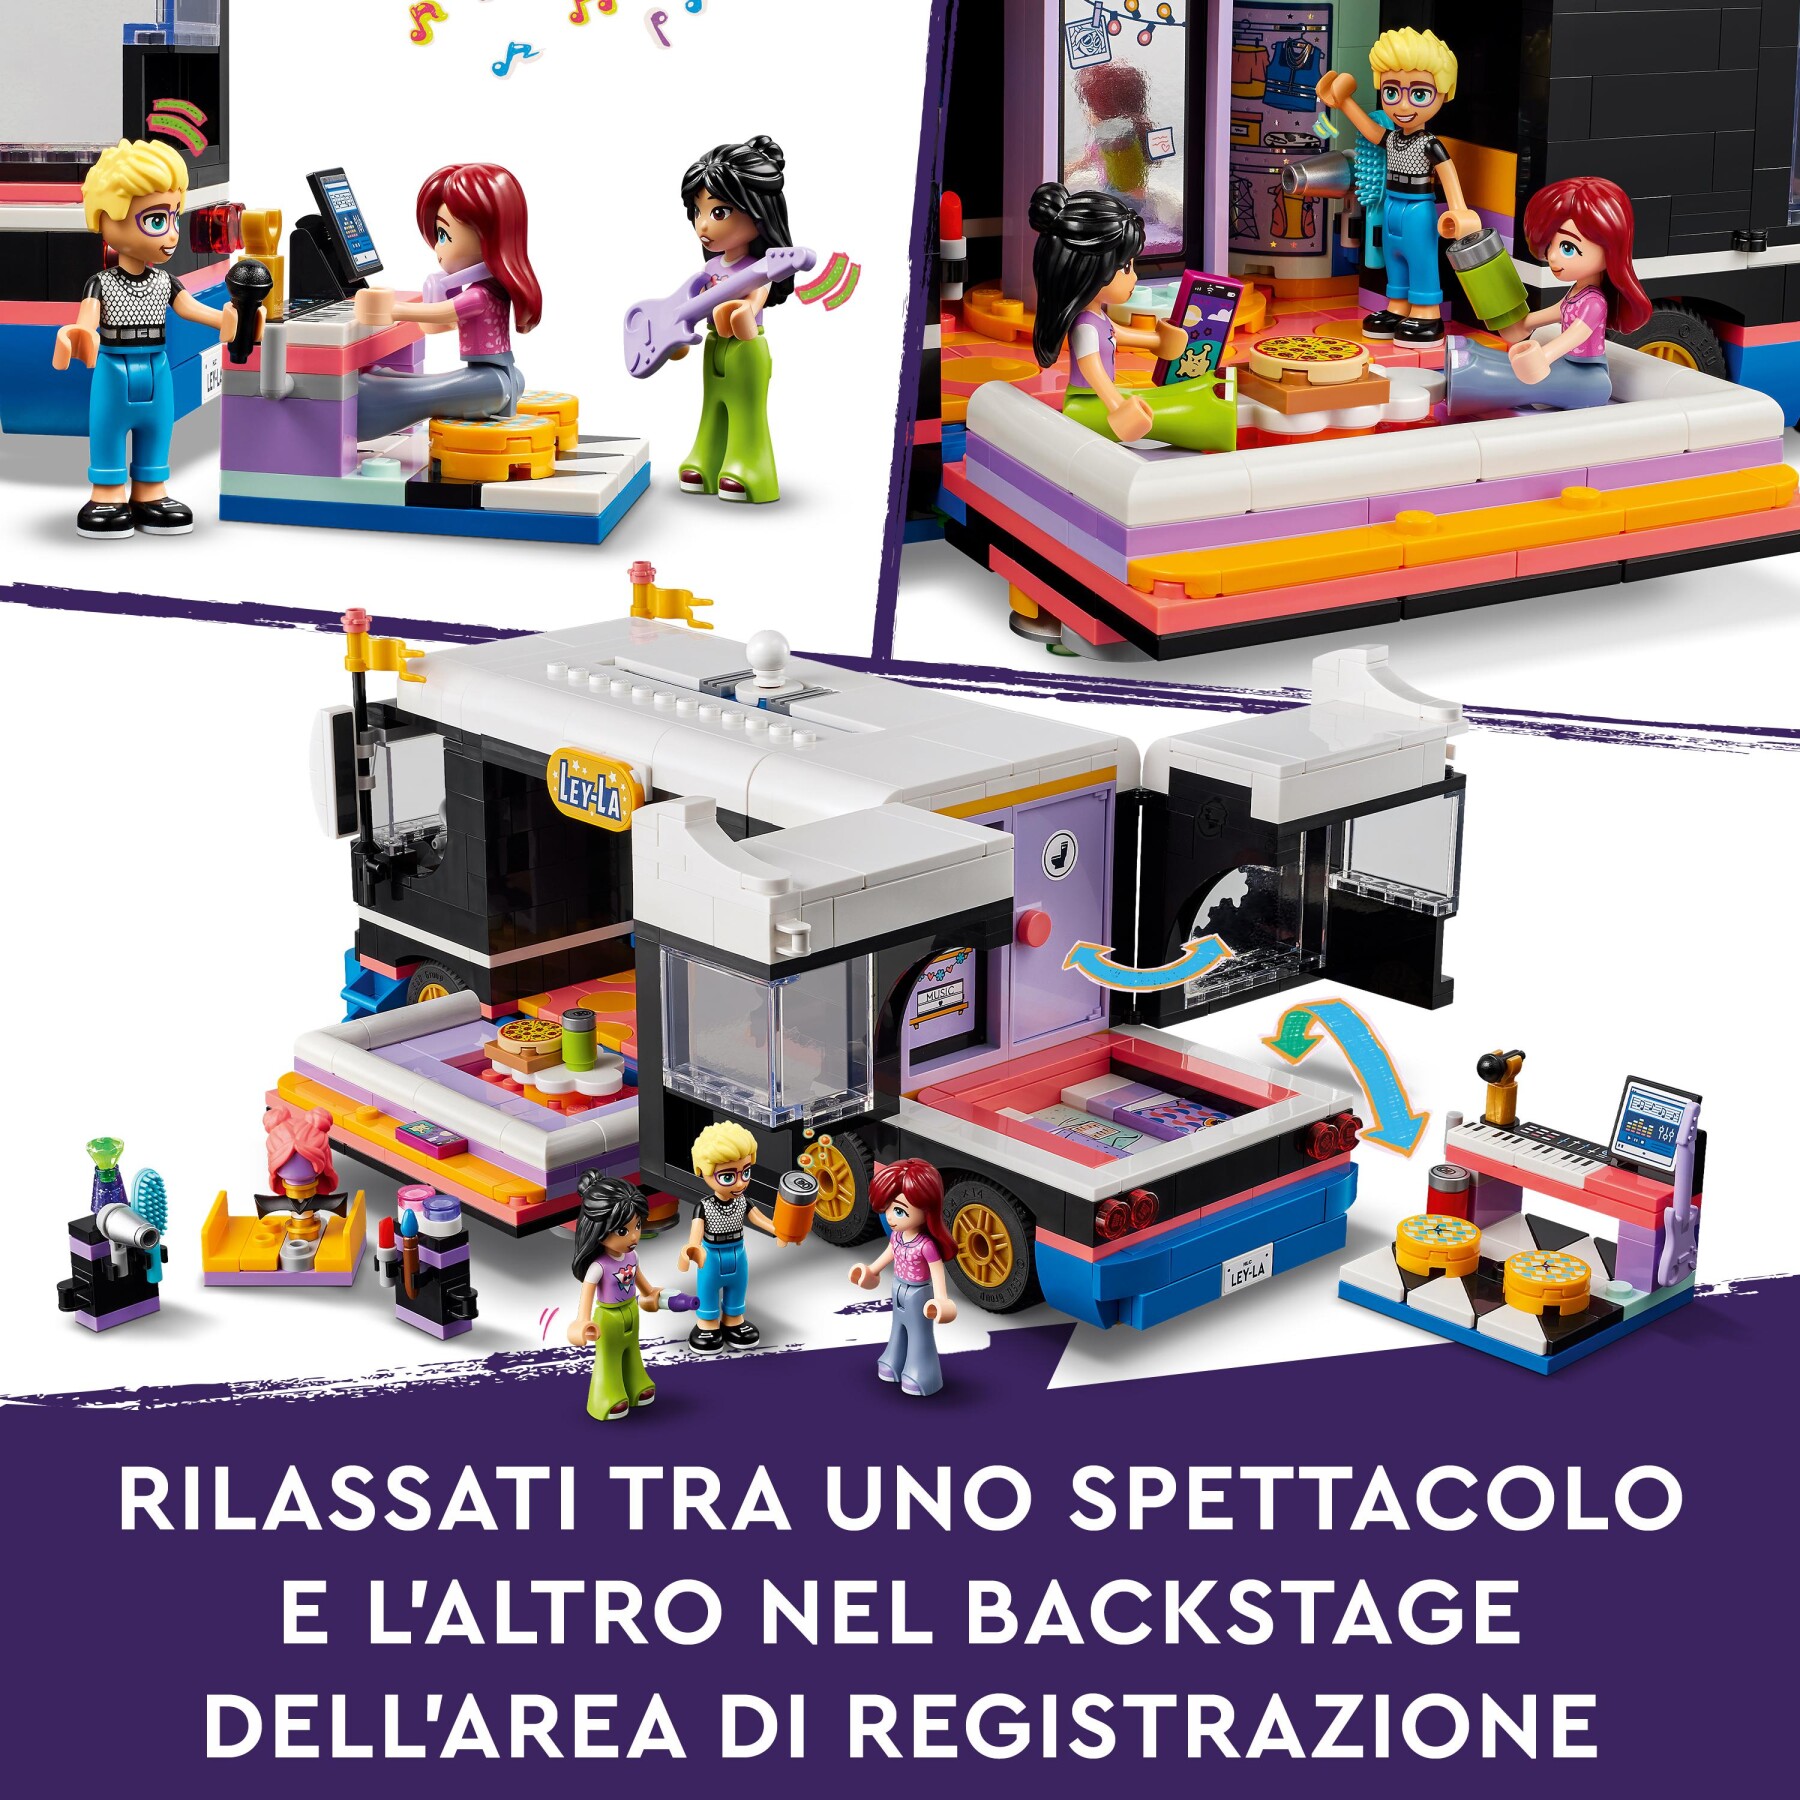 Lego friends 42619 tour bus delle pop star, giochi per bambini 8+, modello da costruire di autobus giocattolo e 4 mini bamboline - LEGO FRIENDS